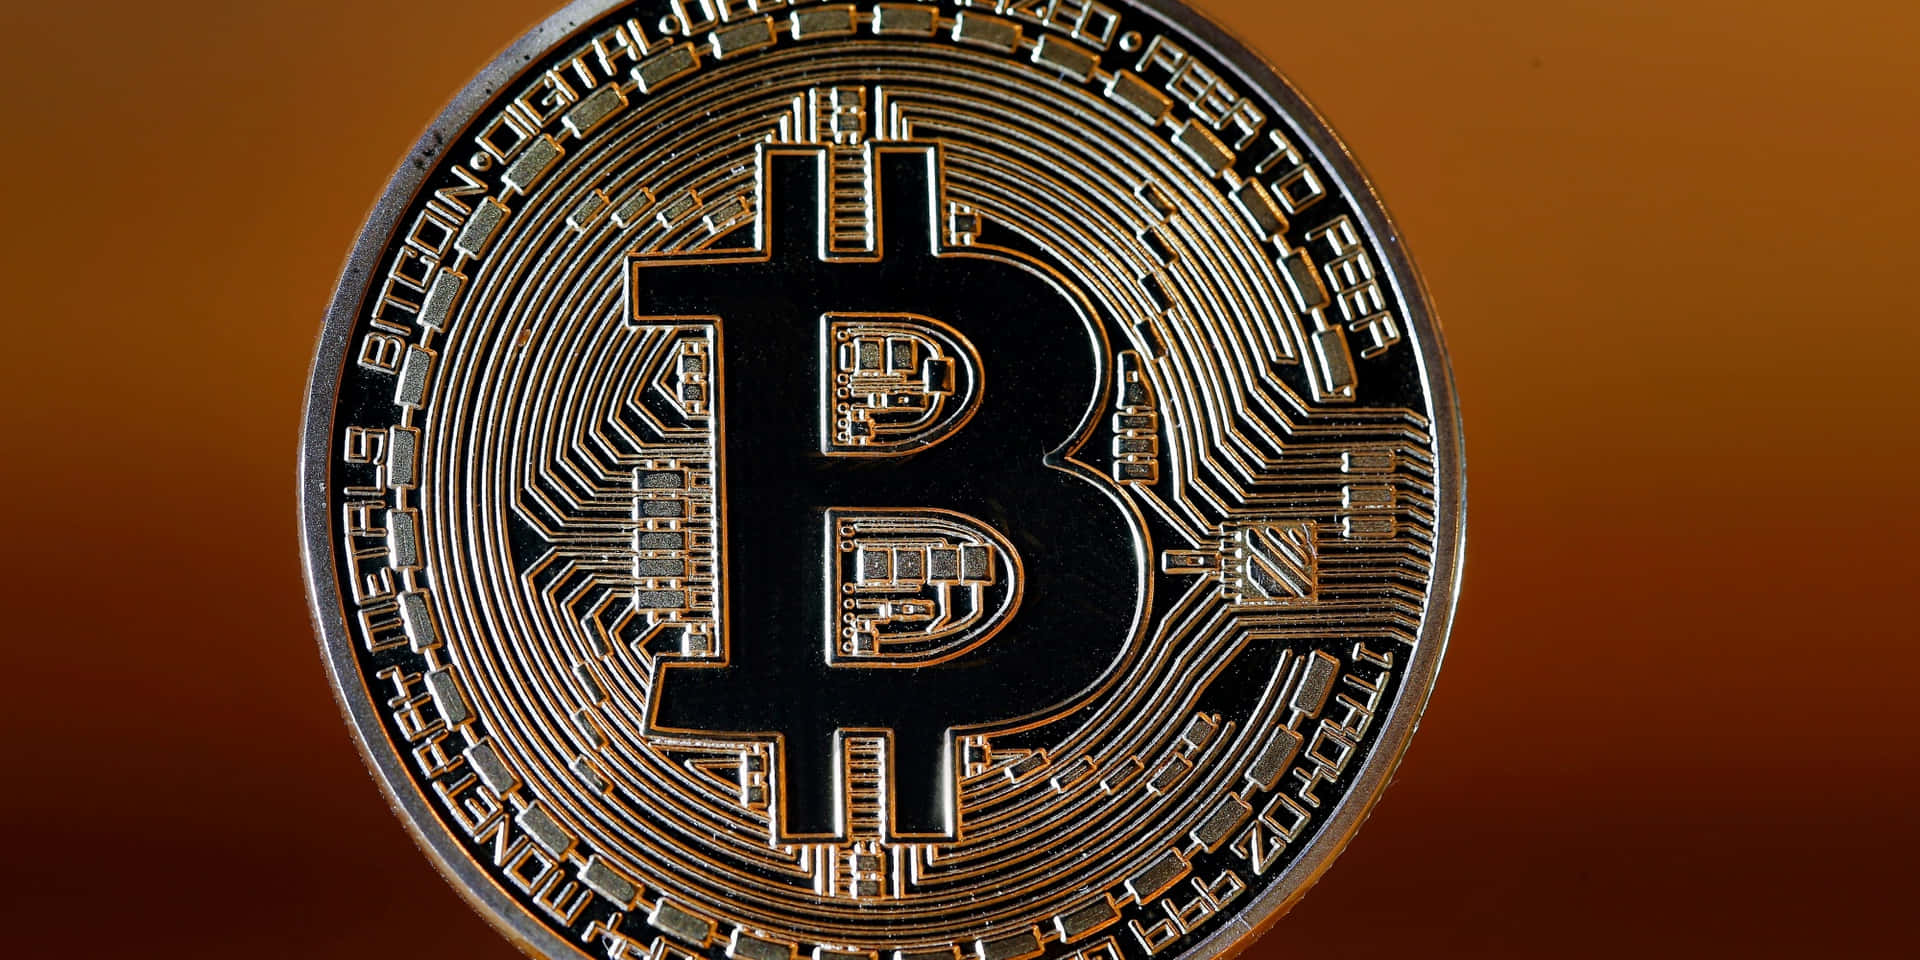 Bitcoiner En Digital Valuta, Der Bruges Til At Betale For Varer Og Tjenester.